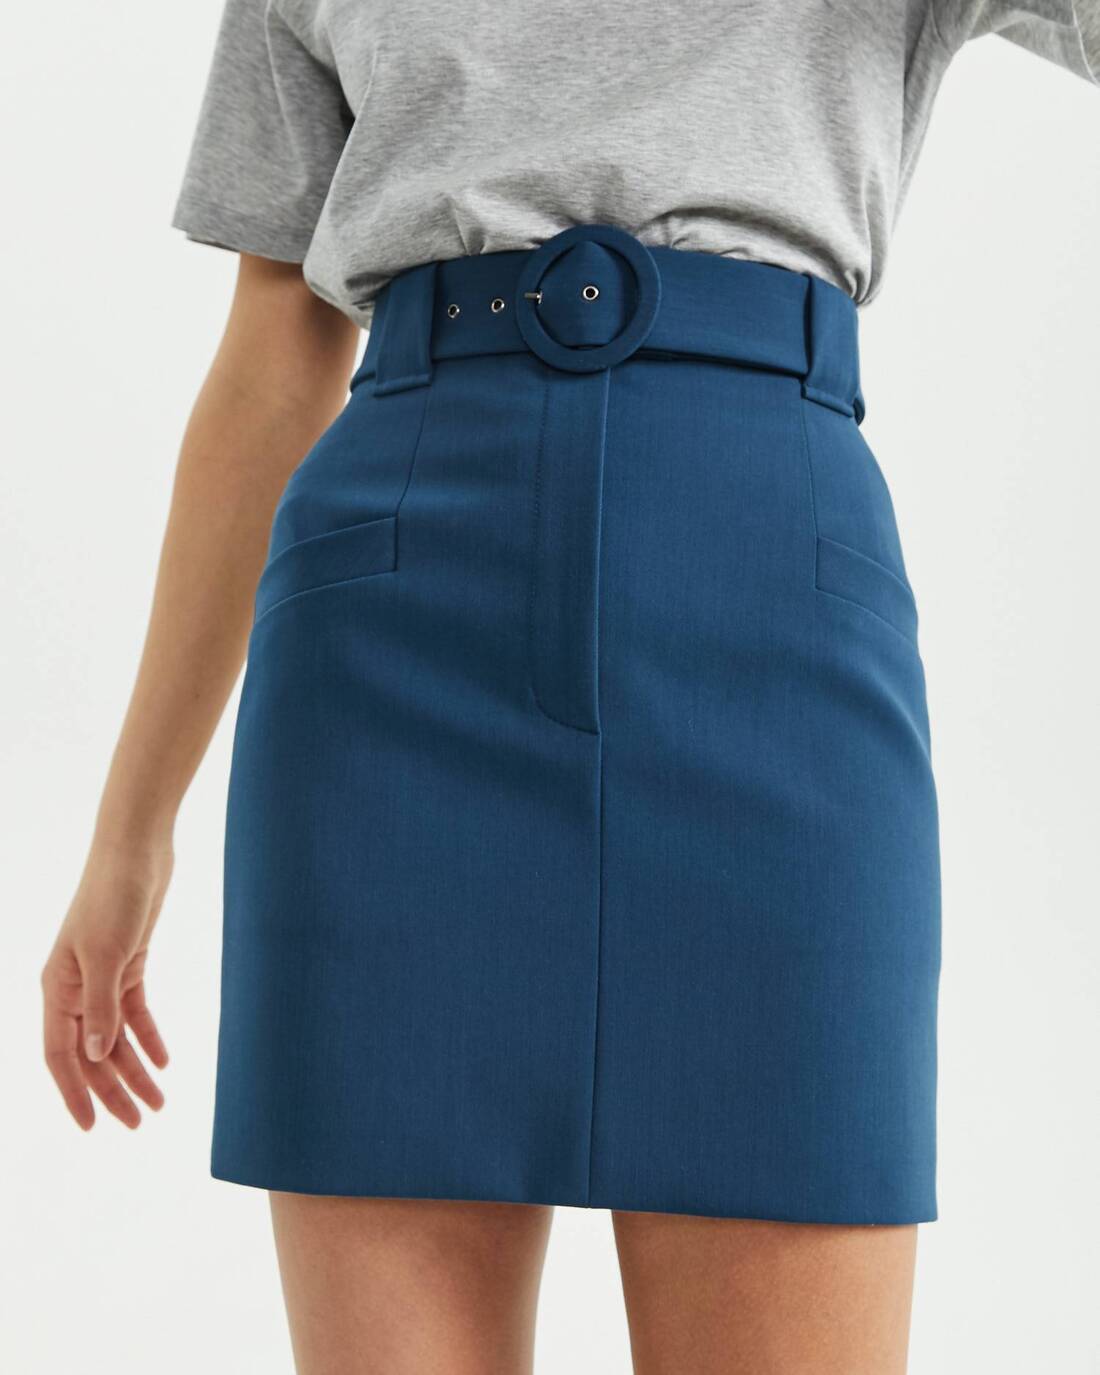 High-waisted buckled skirt